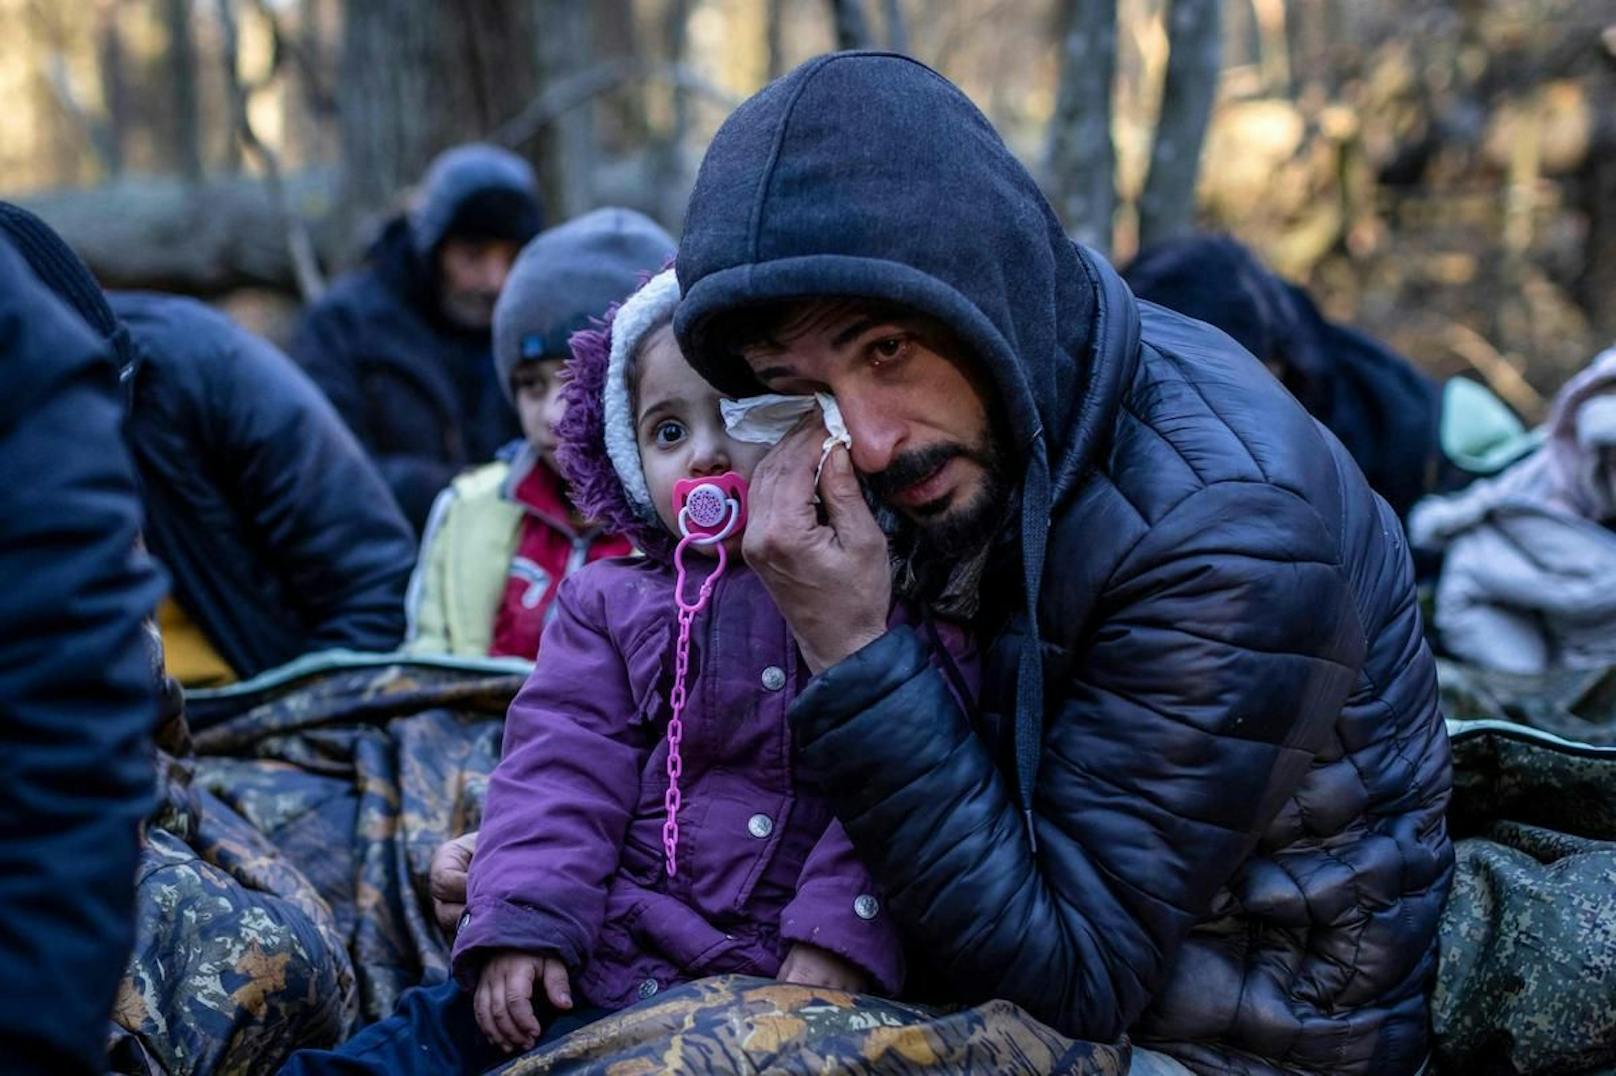 Mitglieder einer kurdischen Familie aus dem Irak, die schon 20 Tage im Wald verbracht haben. Das jüngste ihrer Kinder ist erst fünf Monate alt.